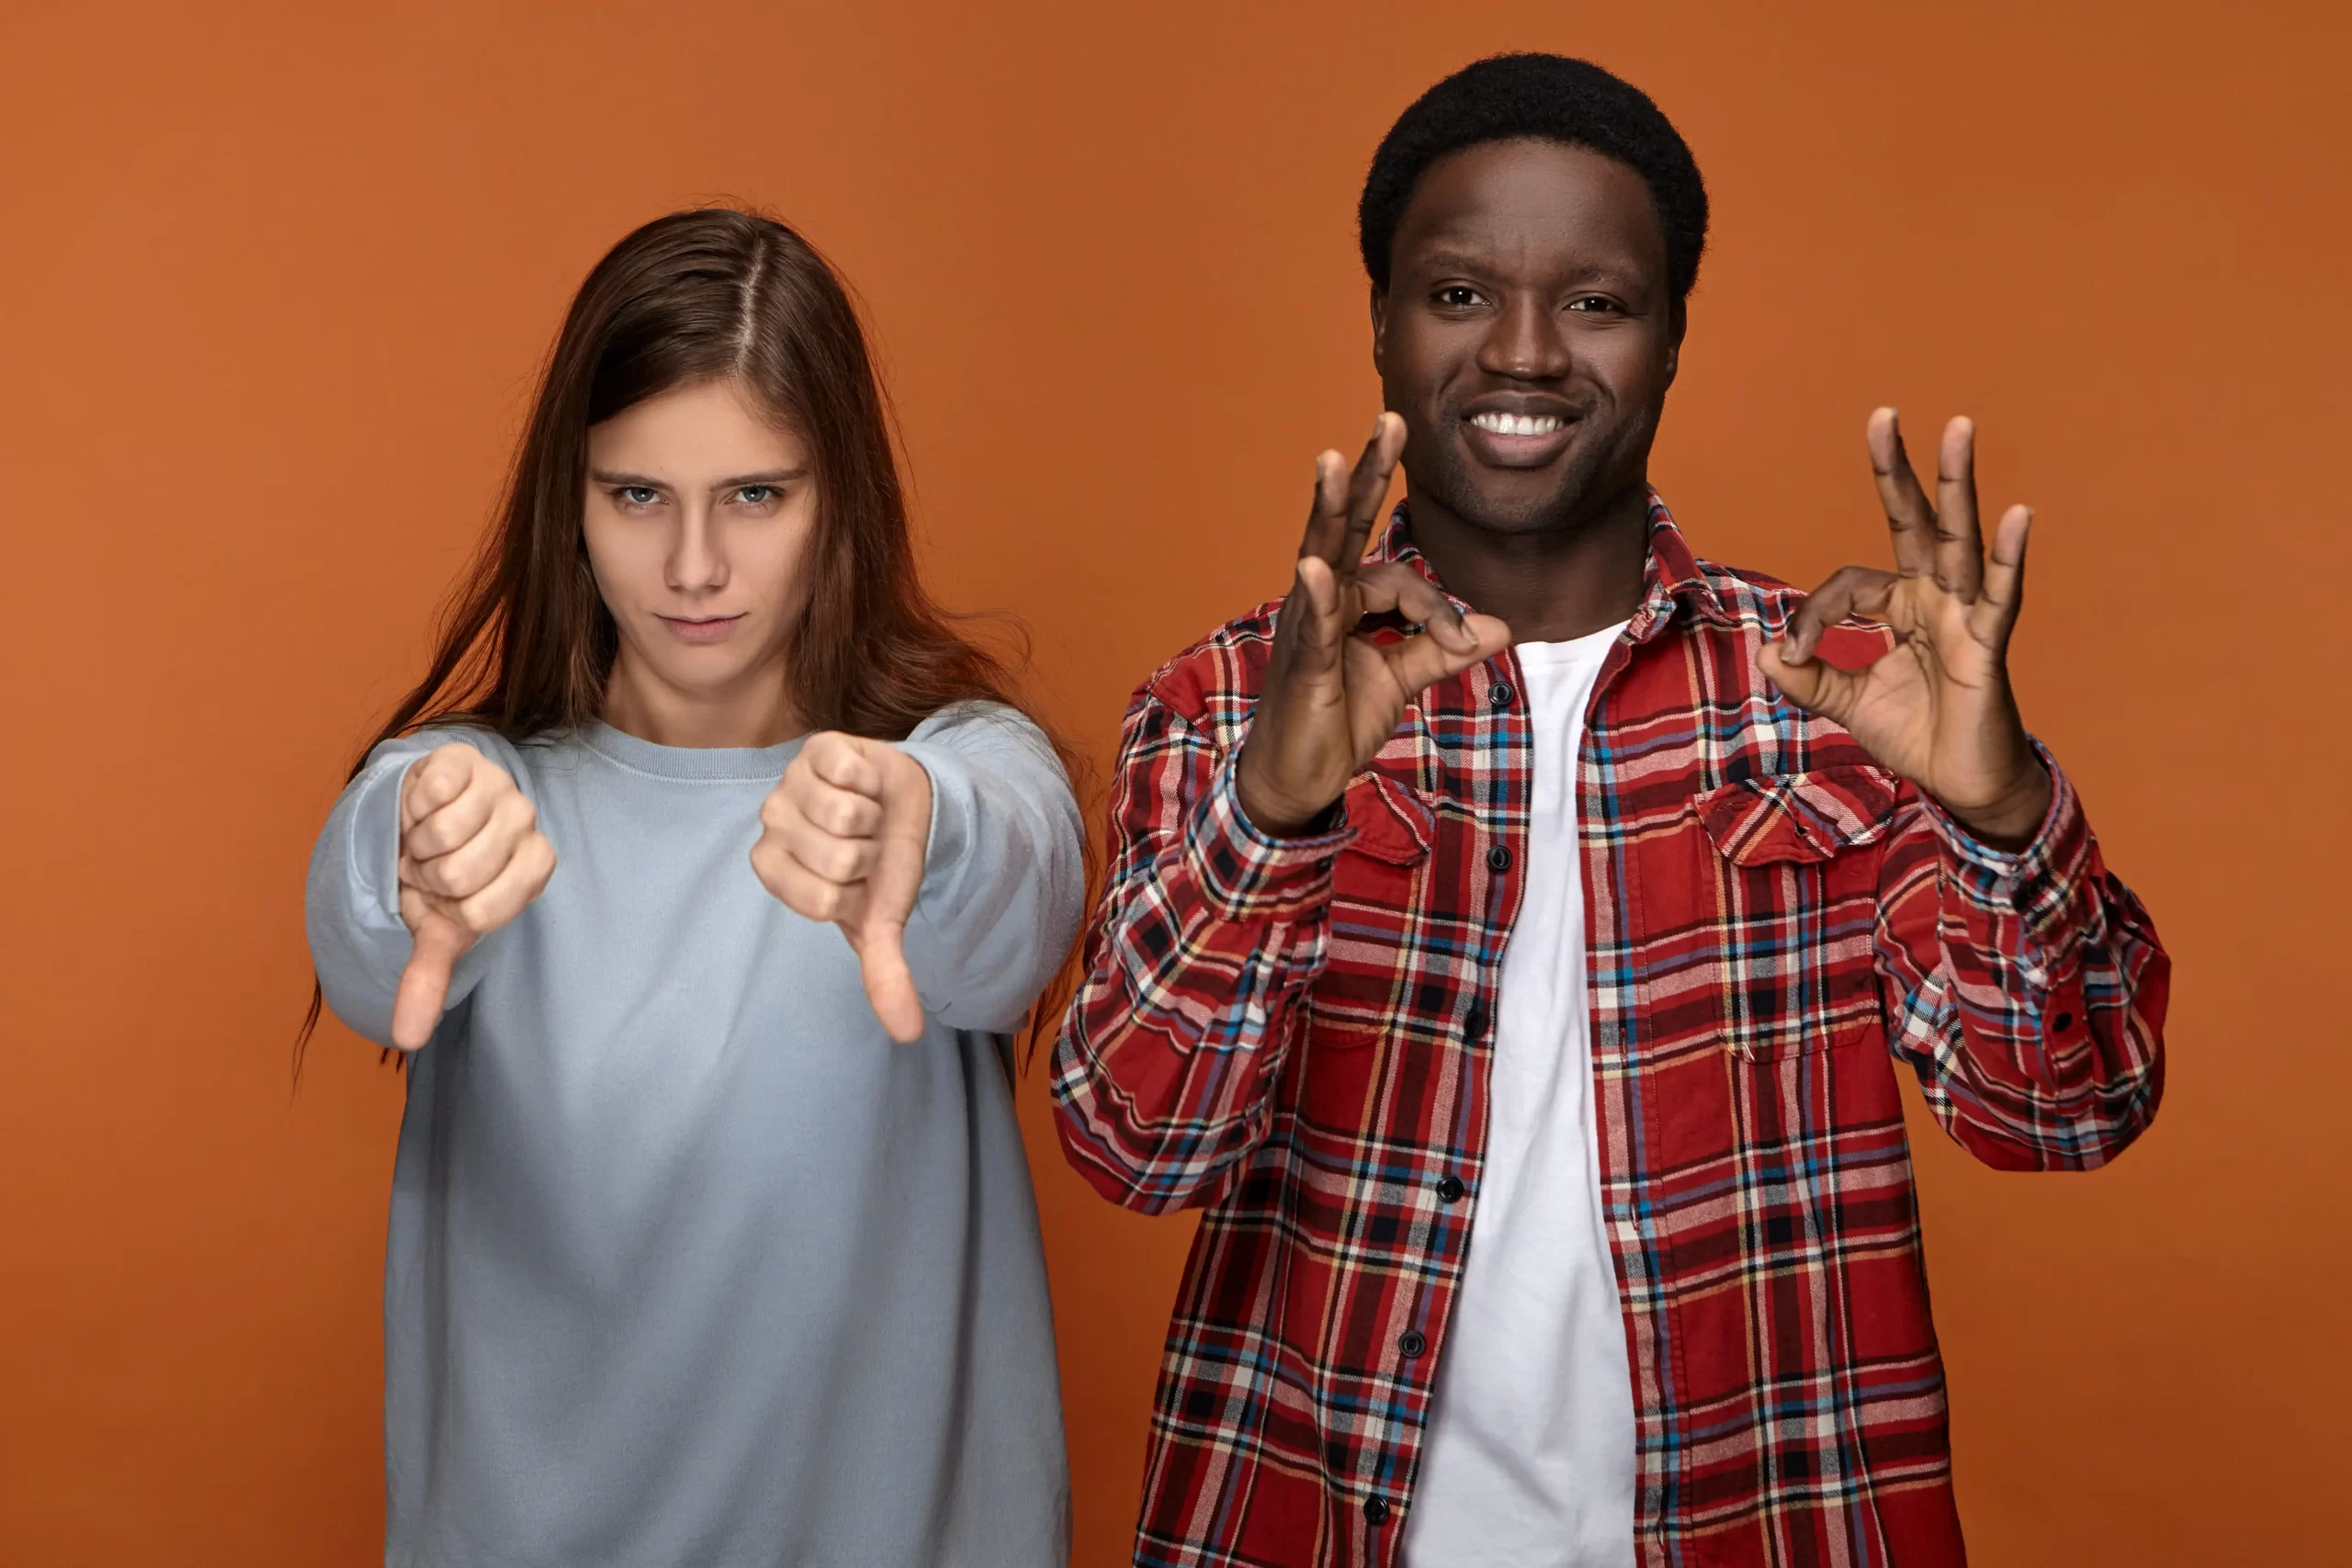 دو فرد سیاه و سفید پوست که در کنار هم قرار دارند و با دستانشان علامت هایی را نشان میدهند